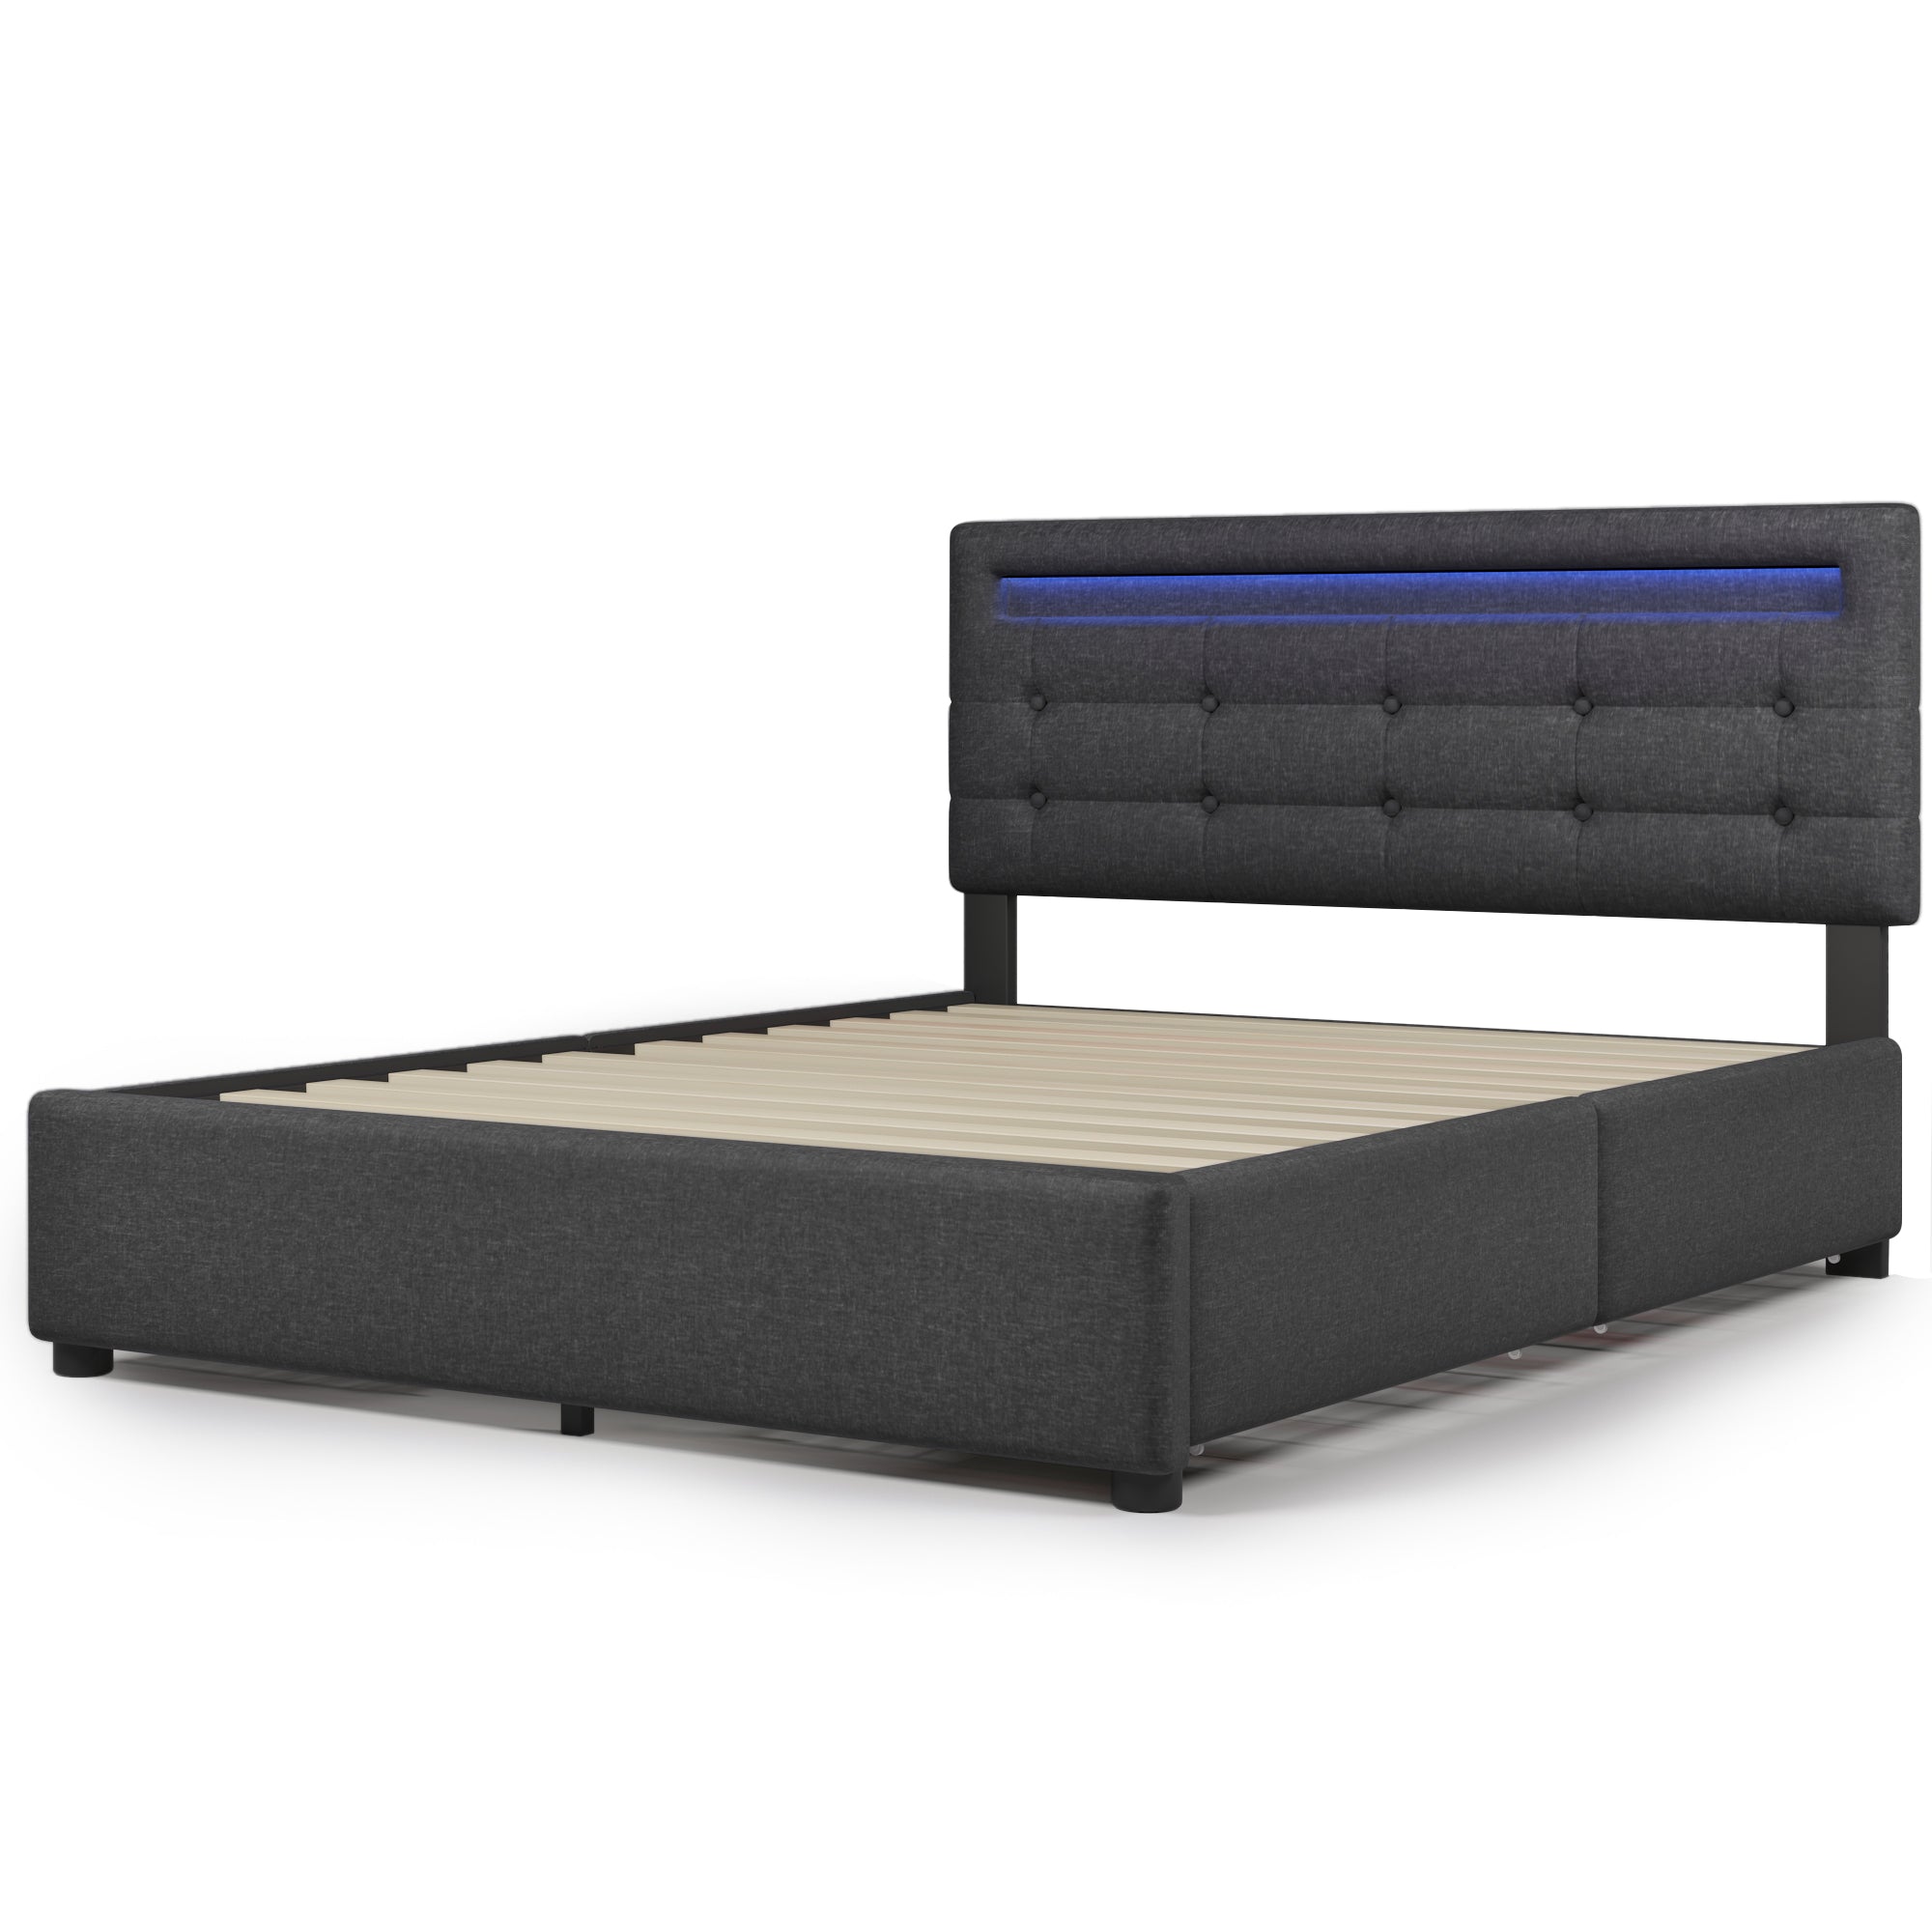 Bellemave® Upholstered Platform Bed with 4 Storage Drawers and LED Lights & Adjustable Headboard Bellemave®